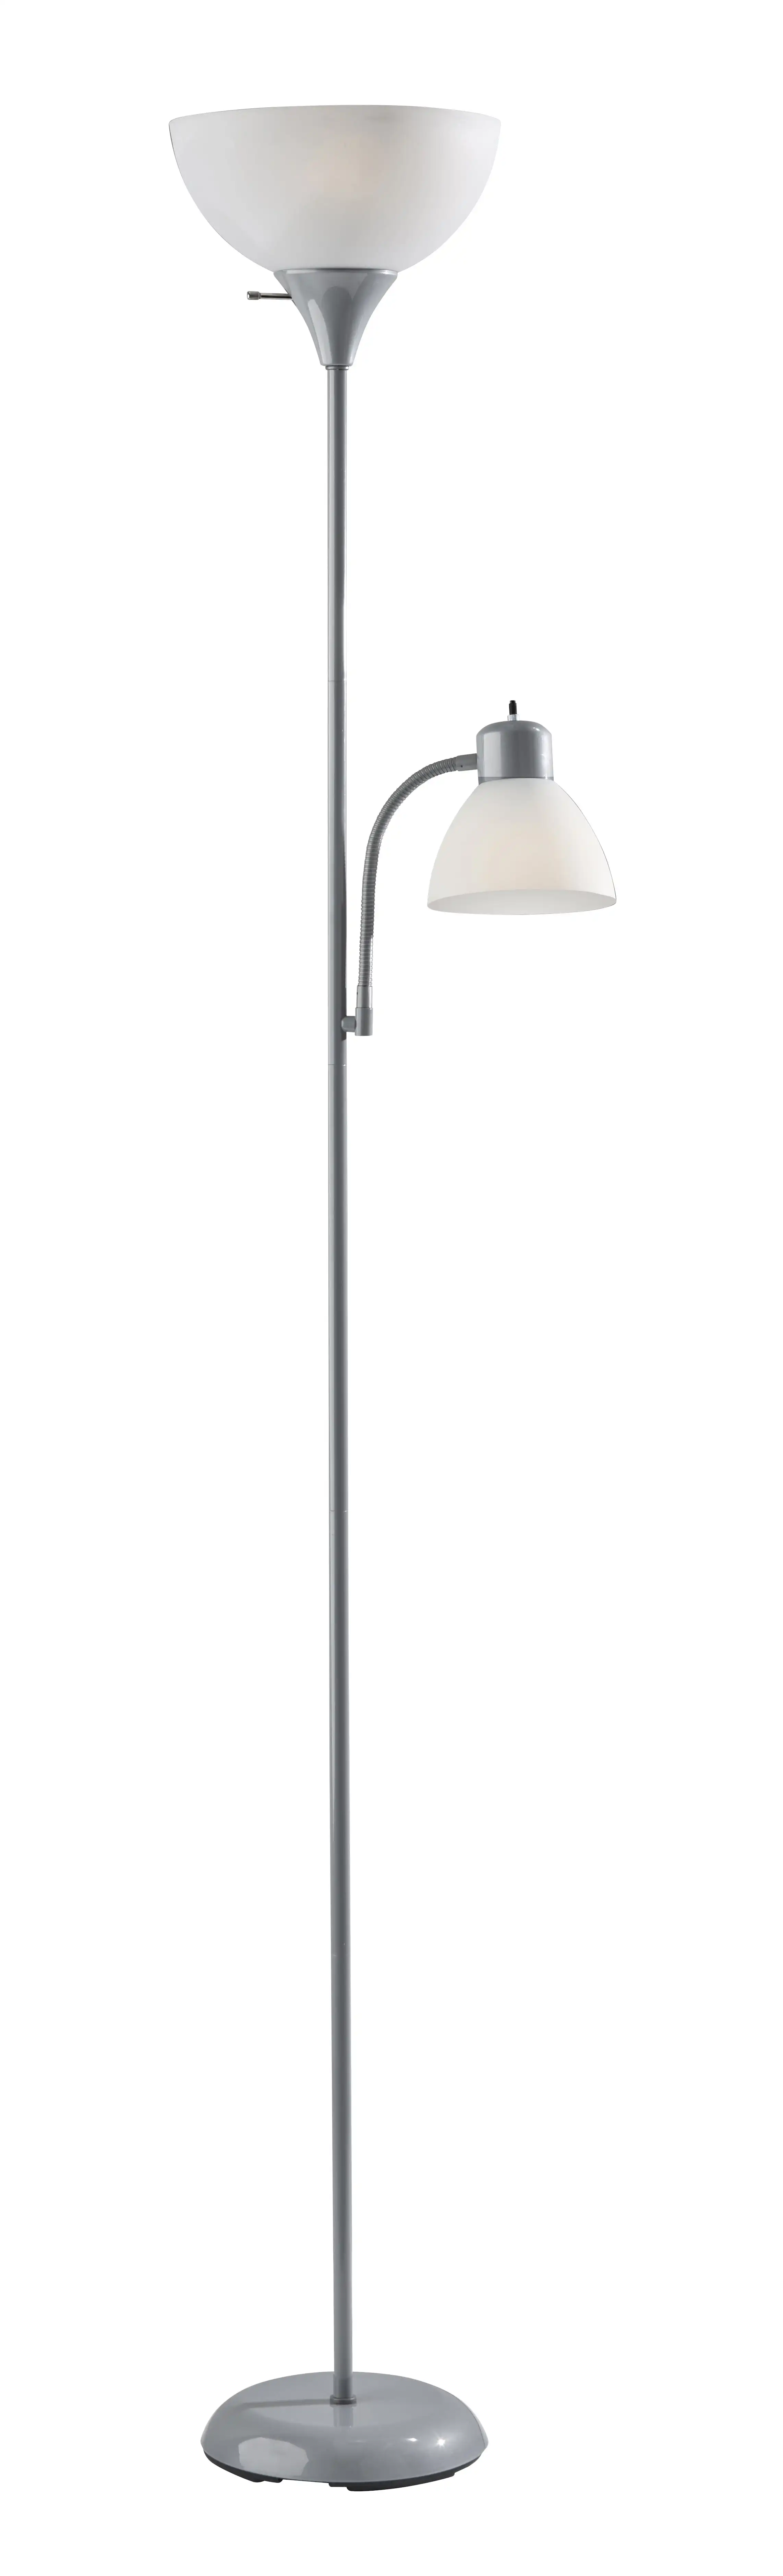 

Комбинированная Напольная Лампа mainstay 72 дюйма, Регулируемая лампа для чтения, серебристая, пластиковая, современная, для молодых и взрослых.